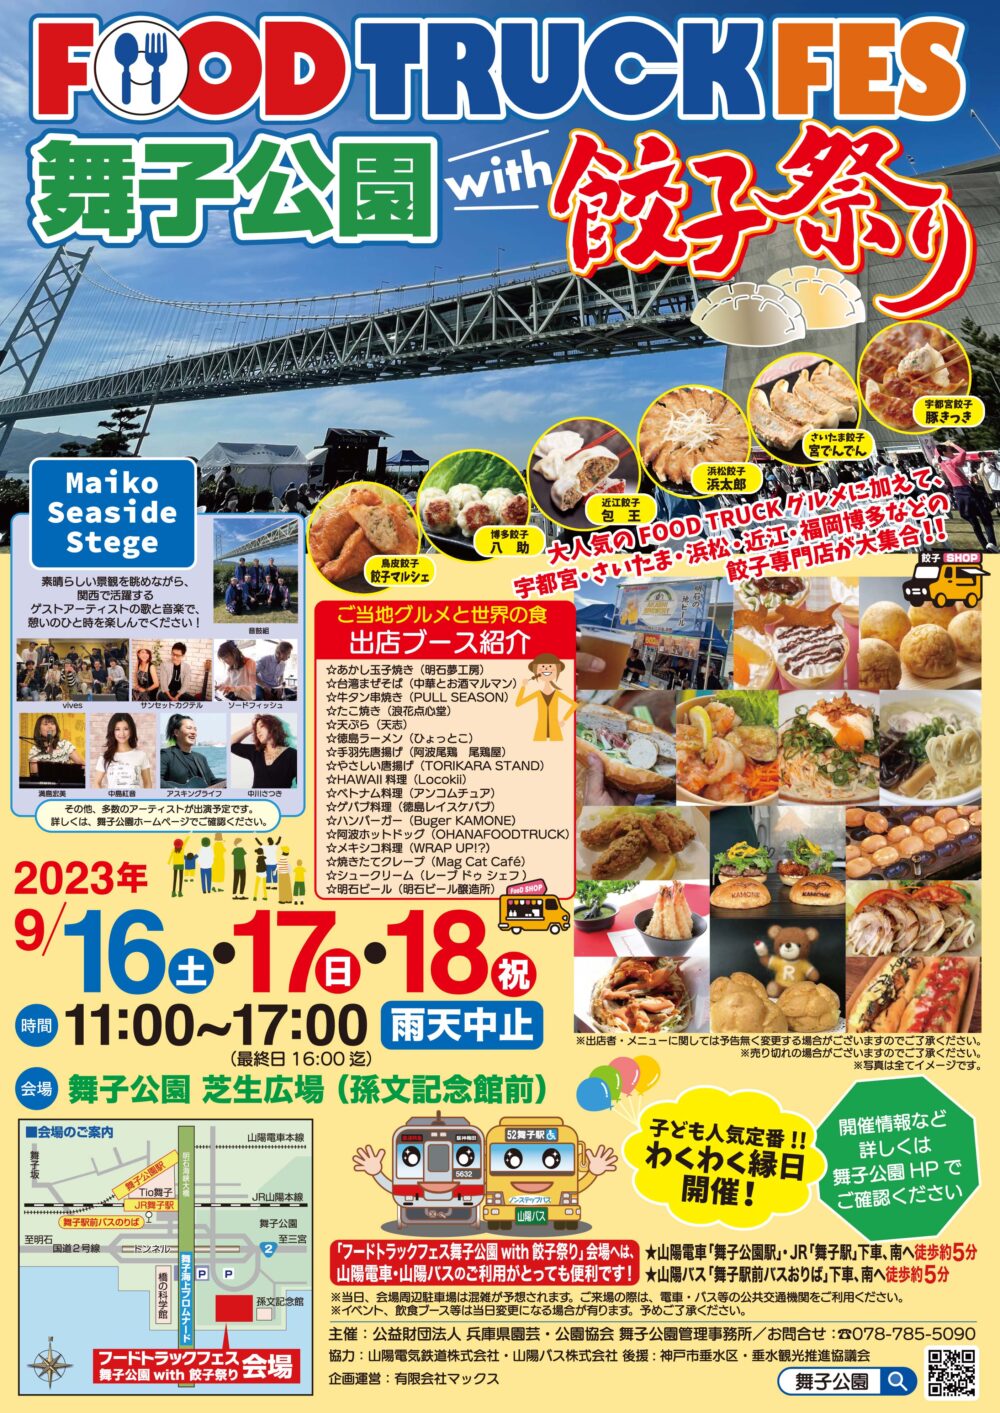 FOOD TRUCK FES 舞子公園 餃子祭り